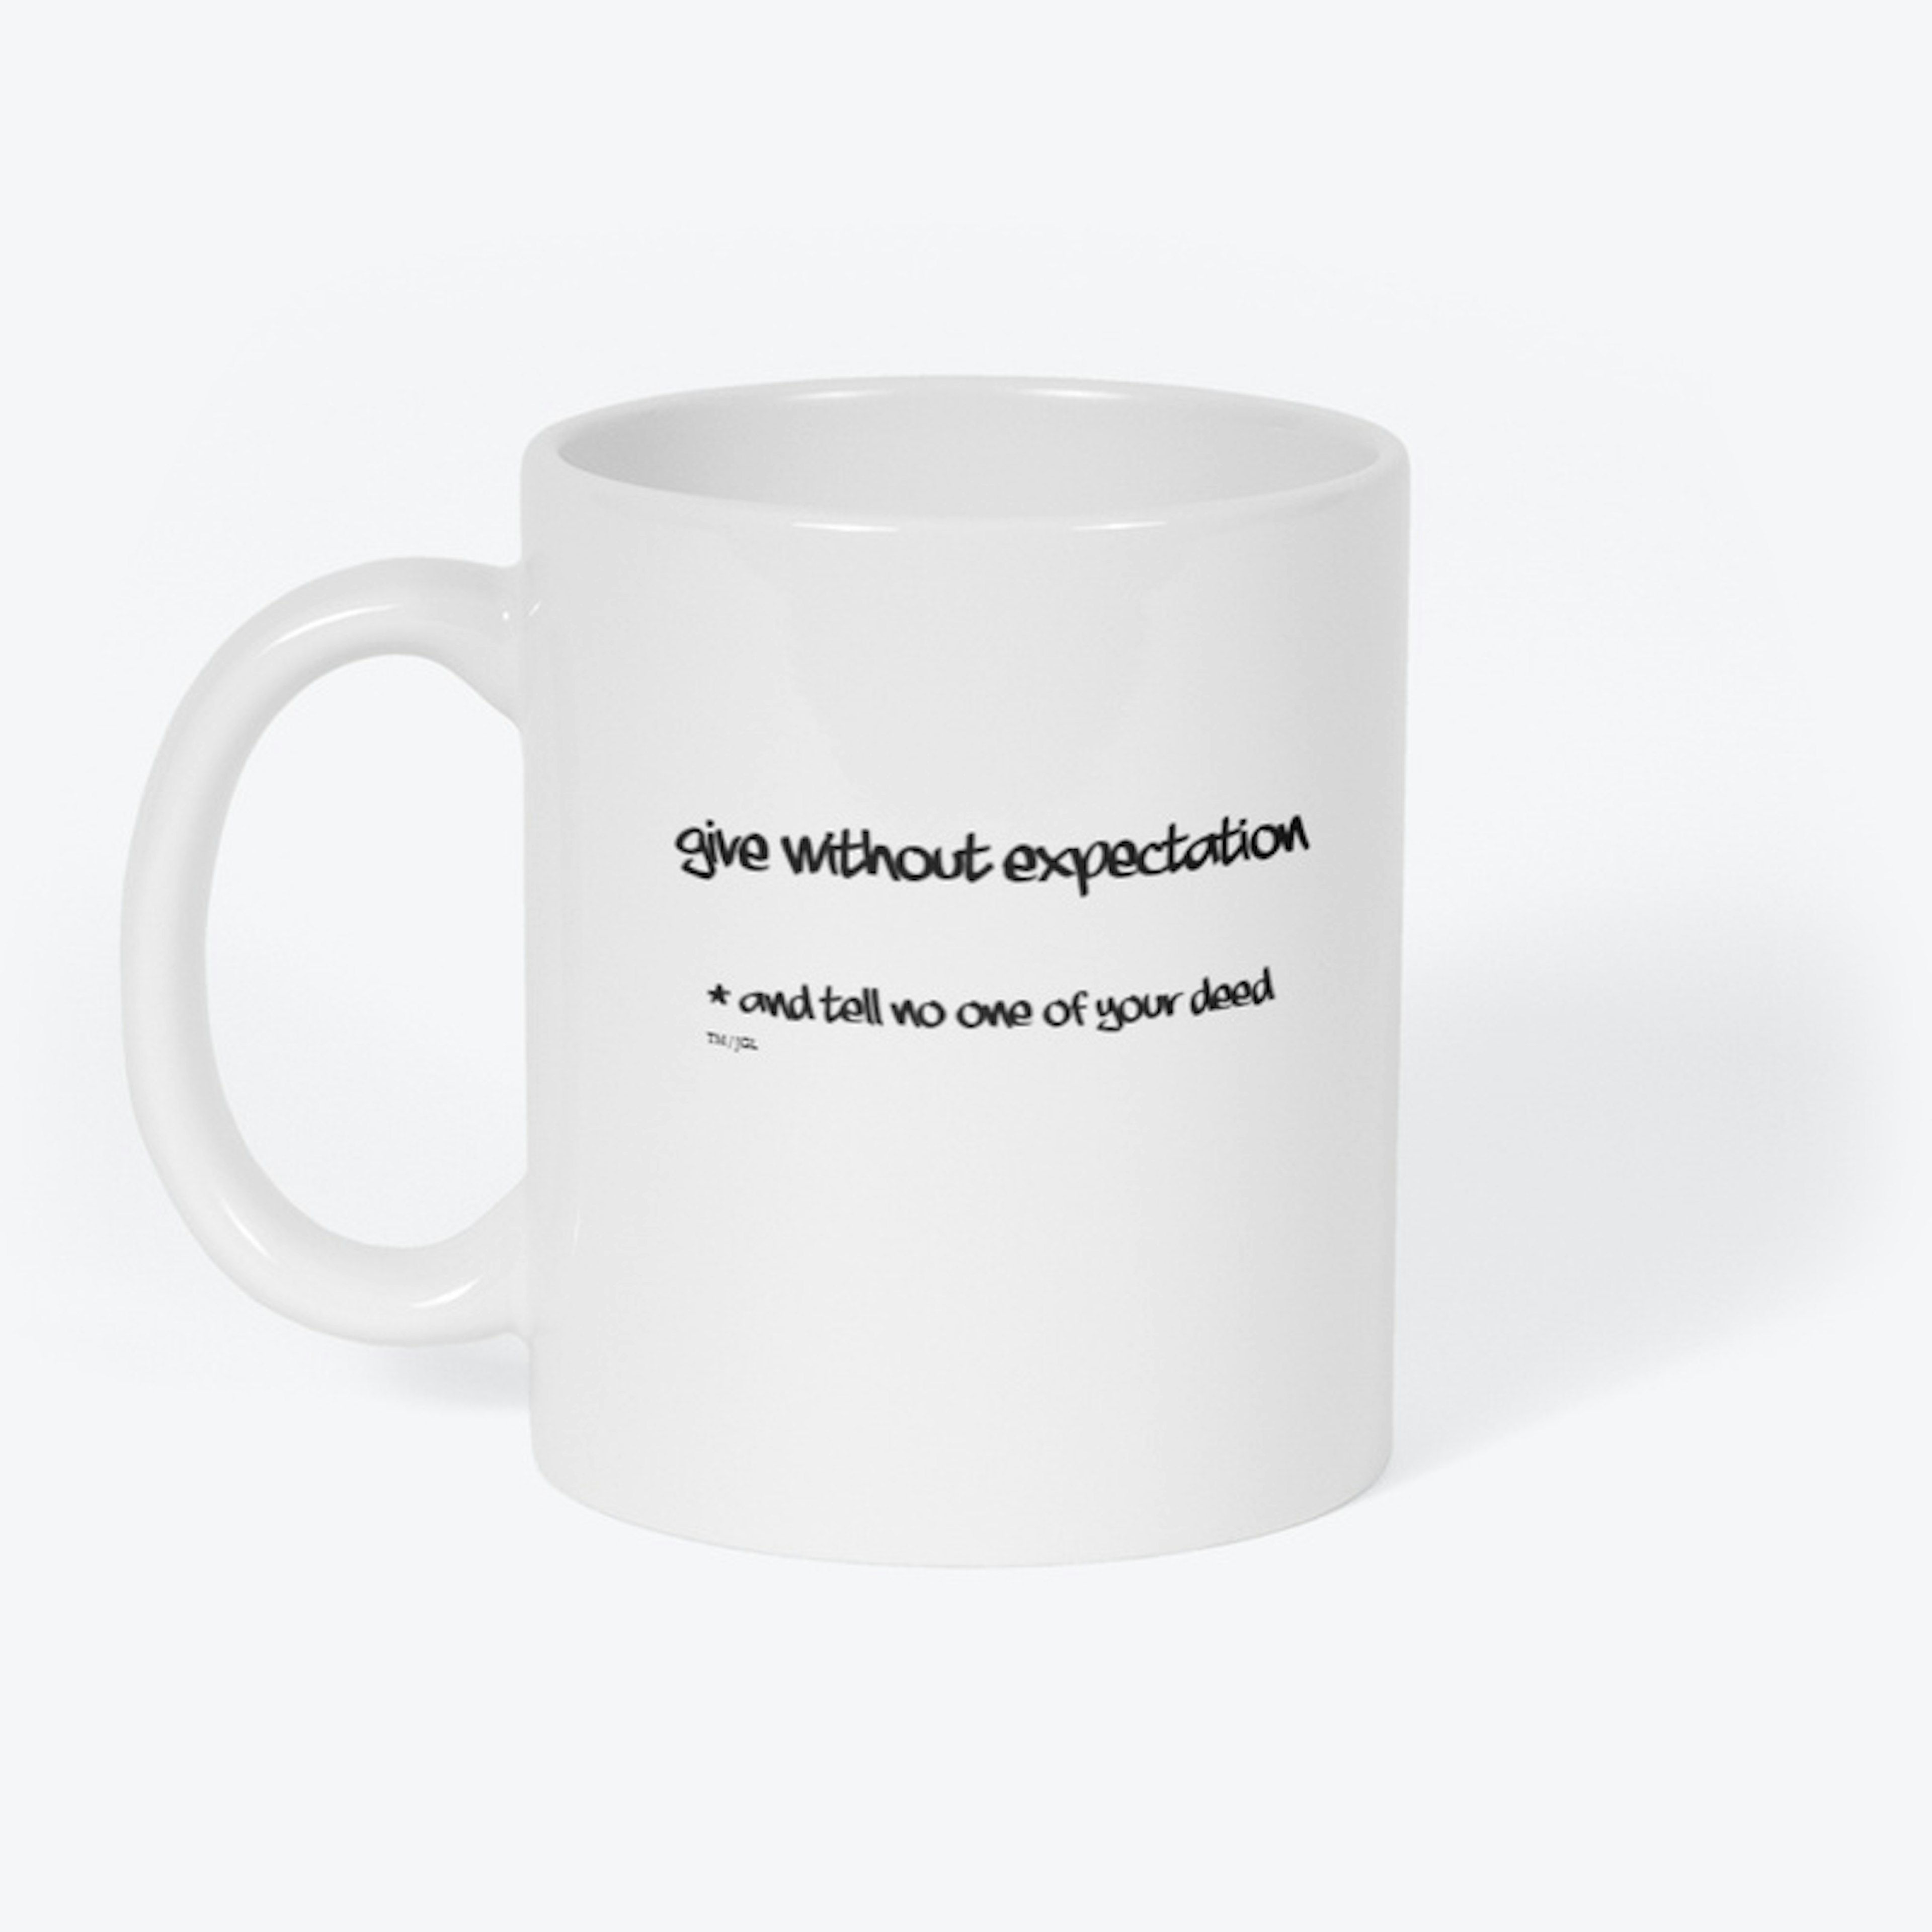 Give without expectation mug